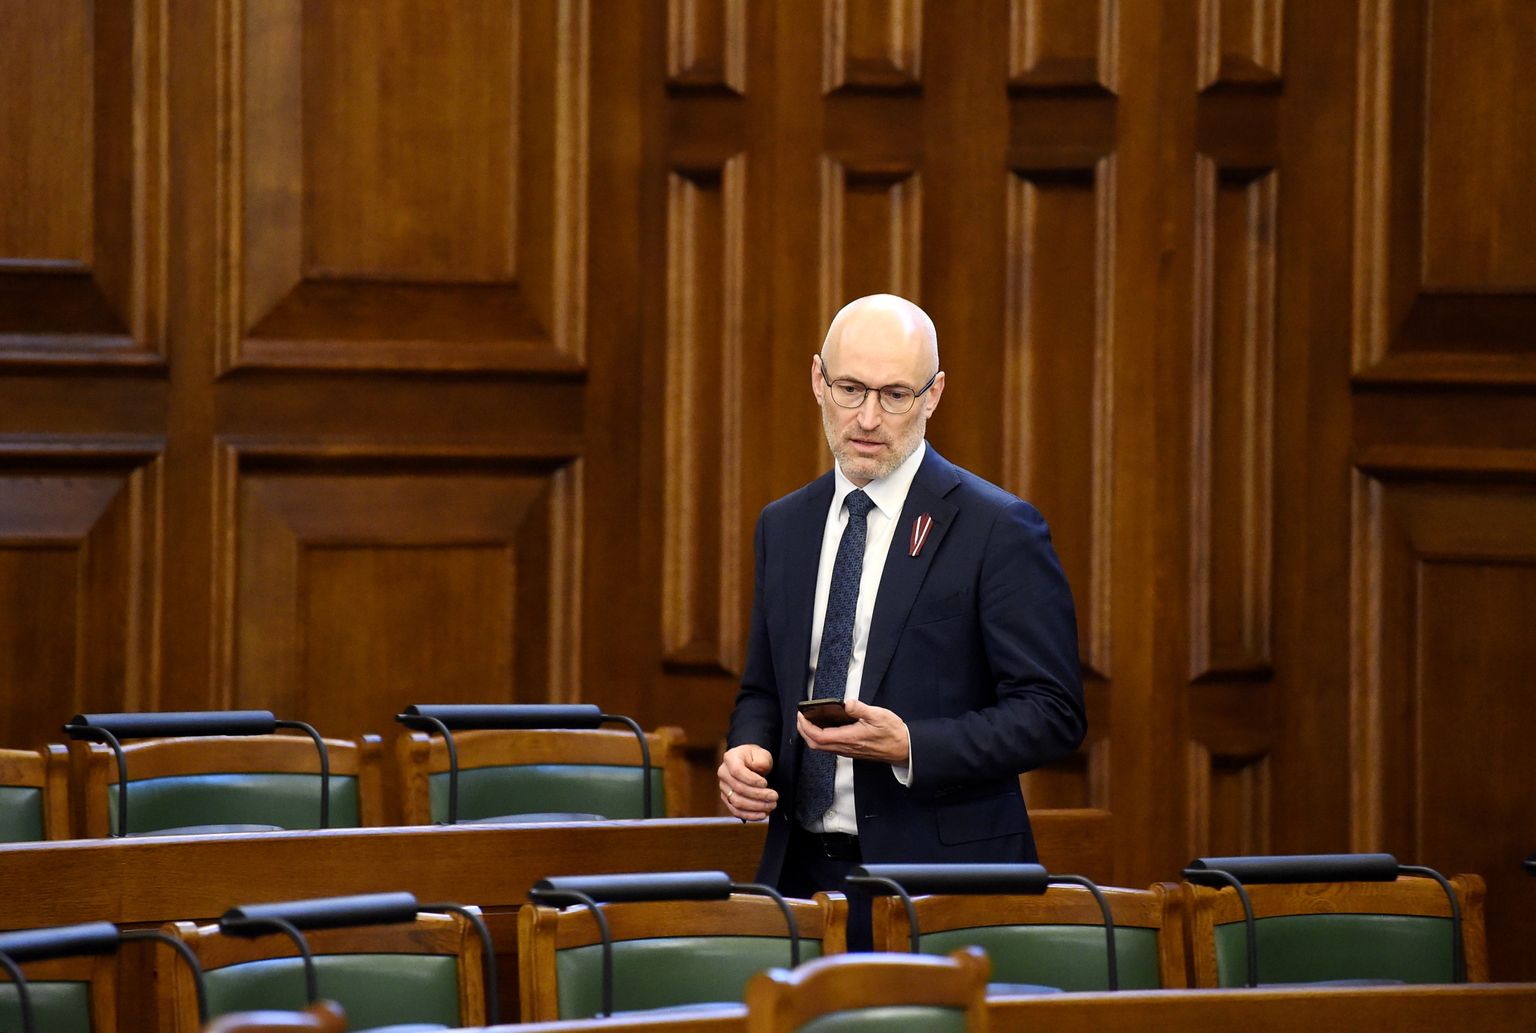 Veselības ministrs Daniels Pavļuts Saeimas svinīgās sēdes laikā, kurā atzīmē Latvijas Republikas 1. Saeimas sanākšanas un Satversmes spēkā stāšanās 100. gadadienu.